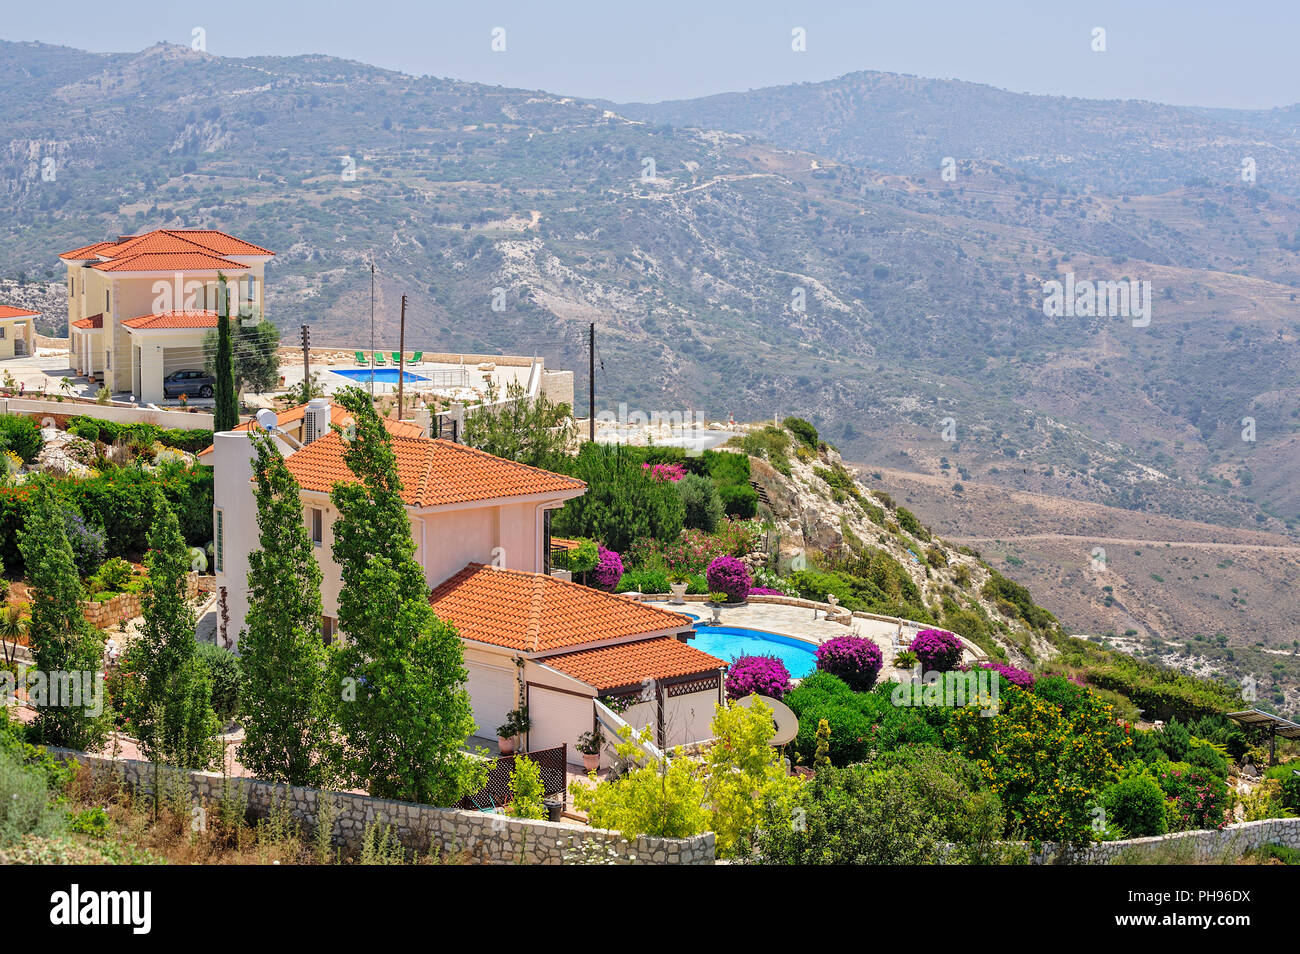 Luxury villas in mountains on Cyprus Stock Photo